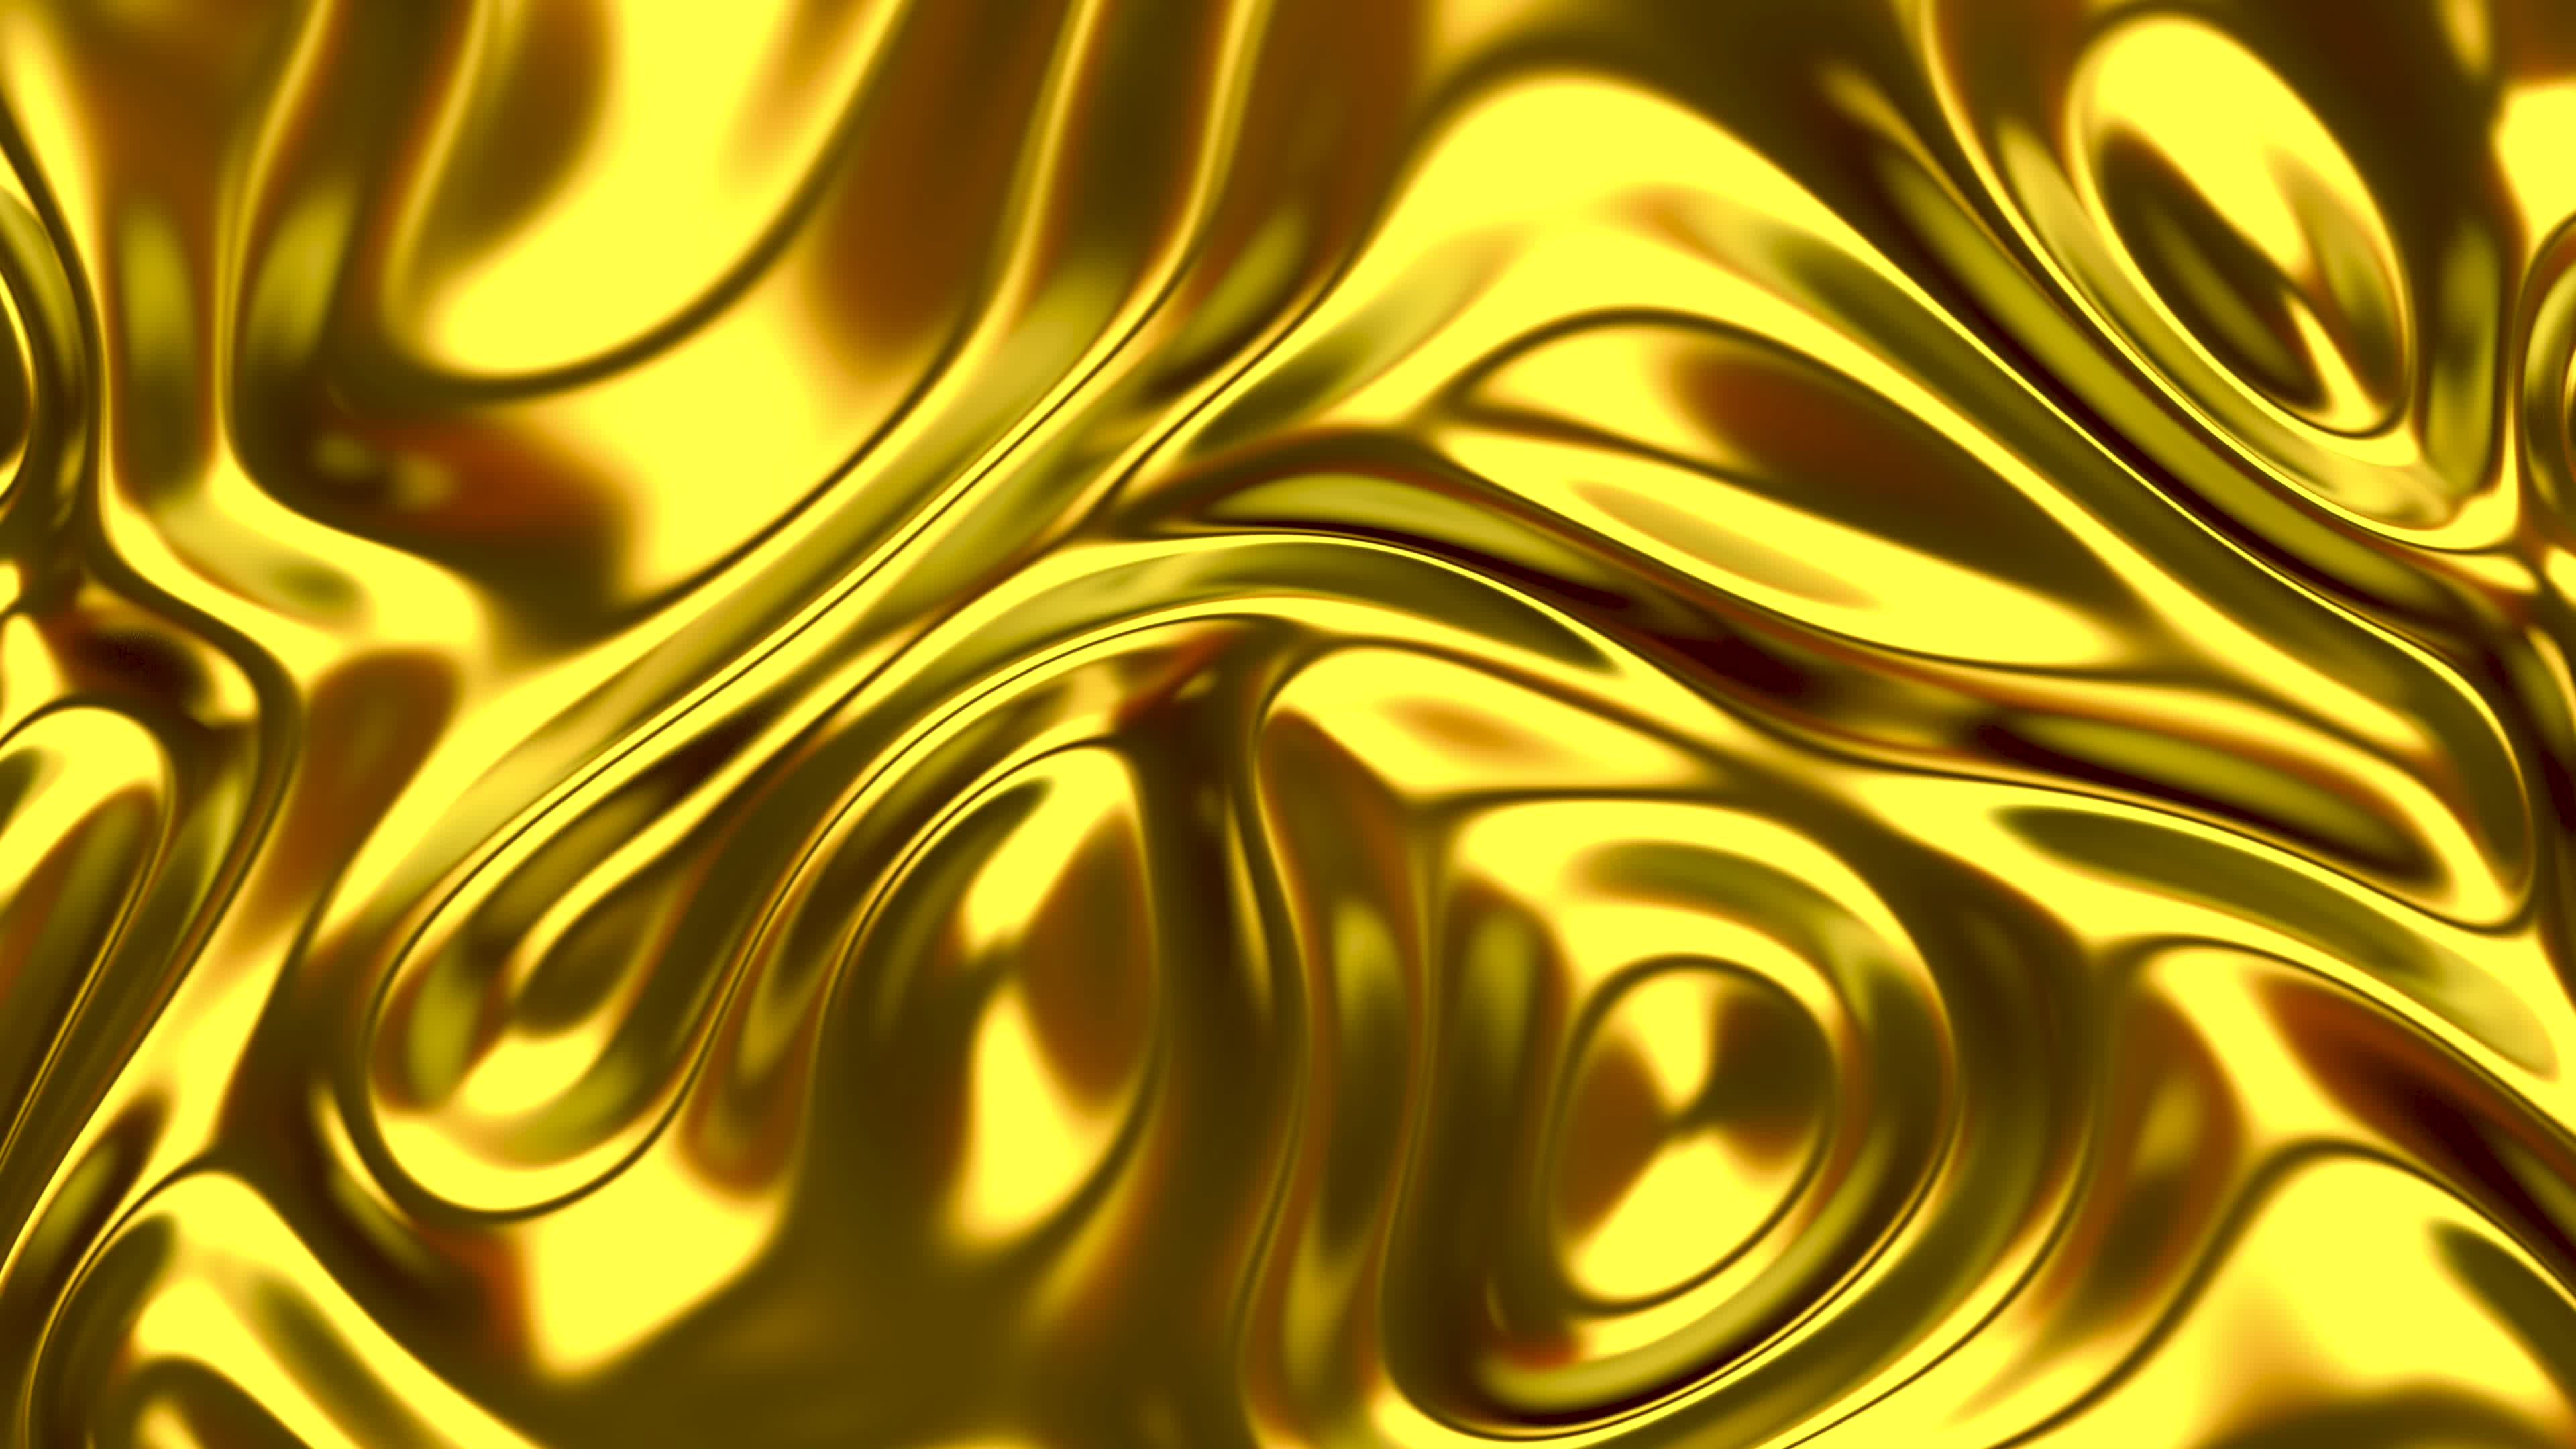 Cùng chiêm ngưỡng chất lỏng vàng óng ánh, tươi sáng, cực kỳ đặc biệt và lôi cuốn. Những hạt phấn vàng tỏa sáng trong chất lỏng sẽ khiến bạn trầm trồ và muốn chiêm ngưỡng đi ngược lại.